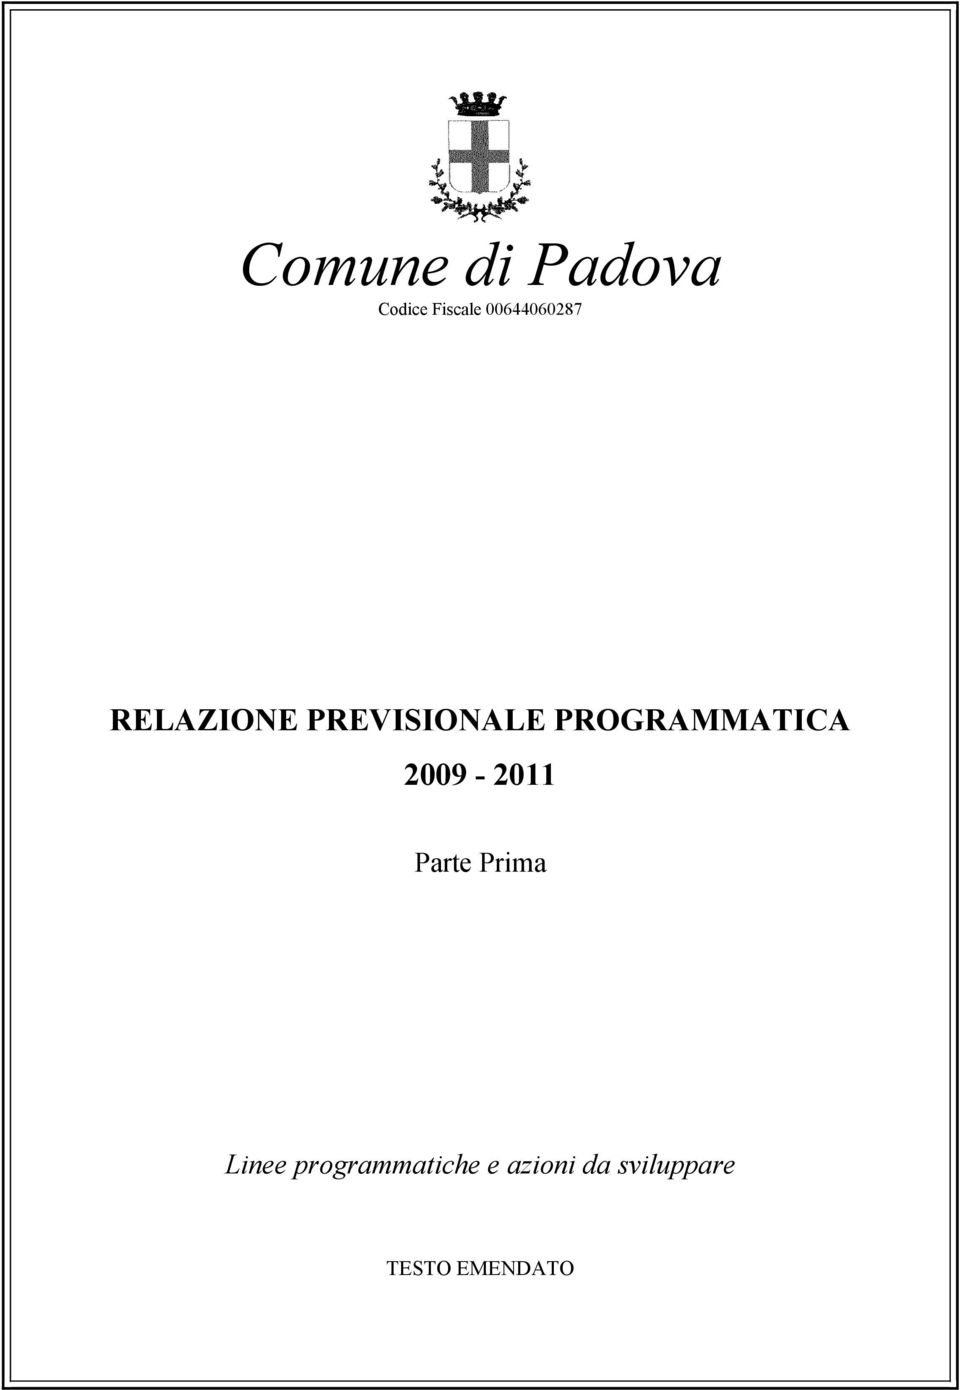 PROGRAMMATICA 2009-2011 Parte Prima